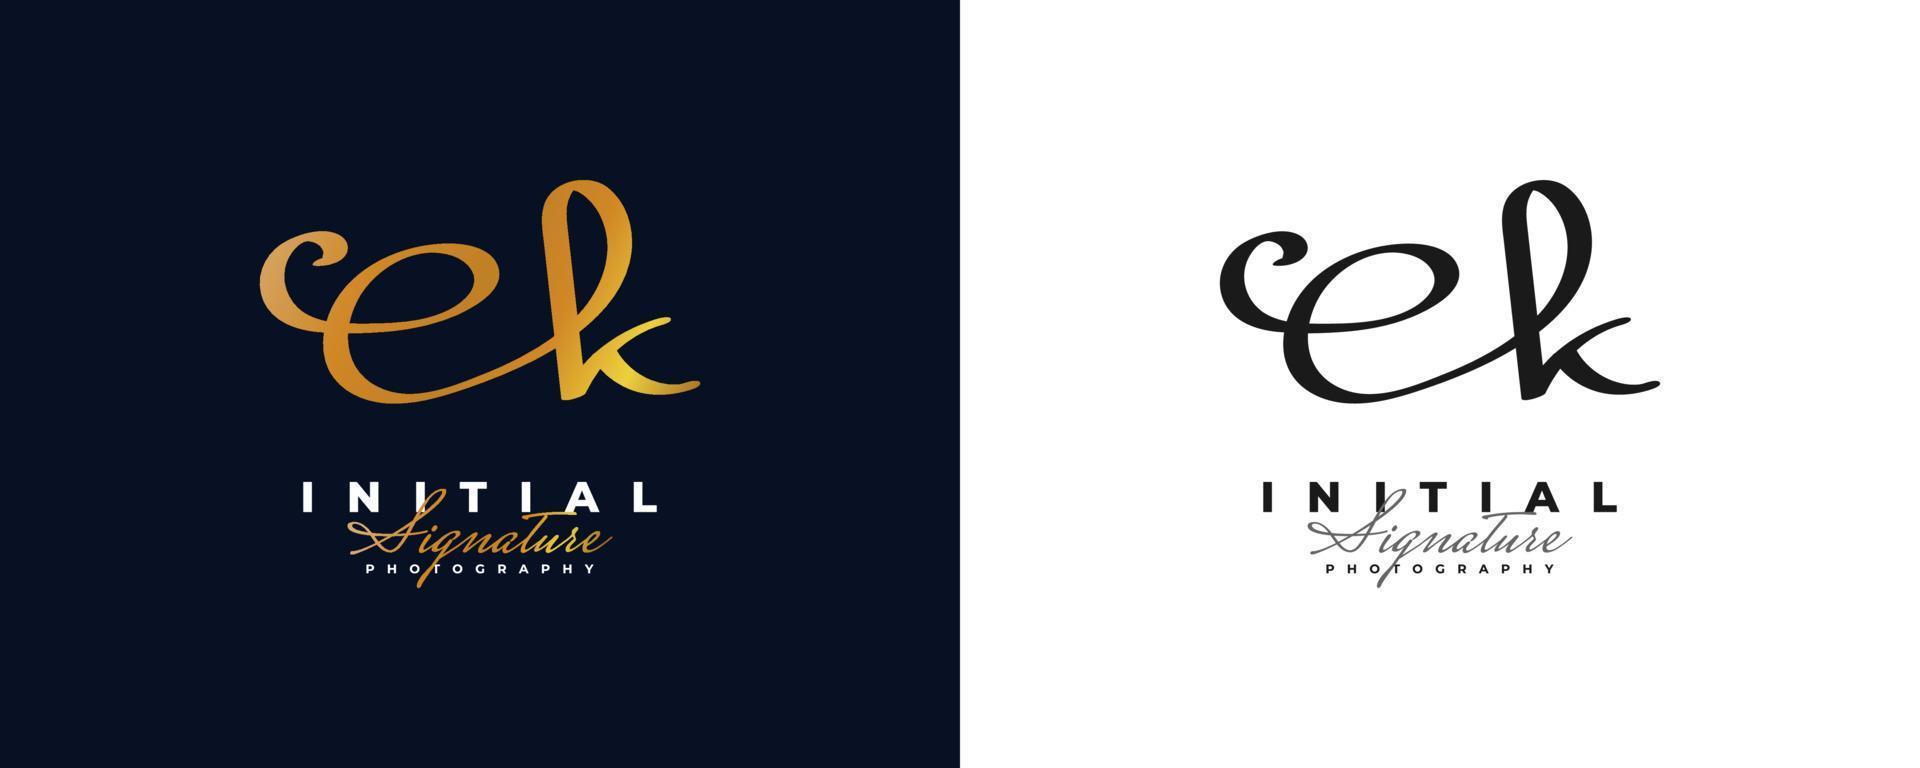 diseño inicial del logotipo e y k con un elegante y minimalista estilo de escritura a mano en oro. logotipo o símbolo de la firma ek para bodas, moda, joyería, boutique e identidad comercial vector